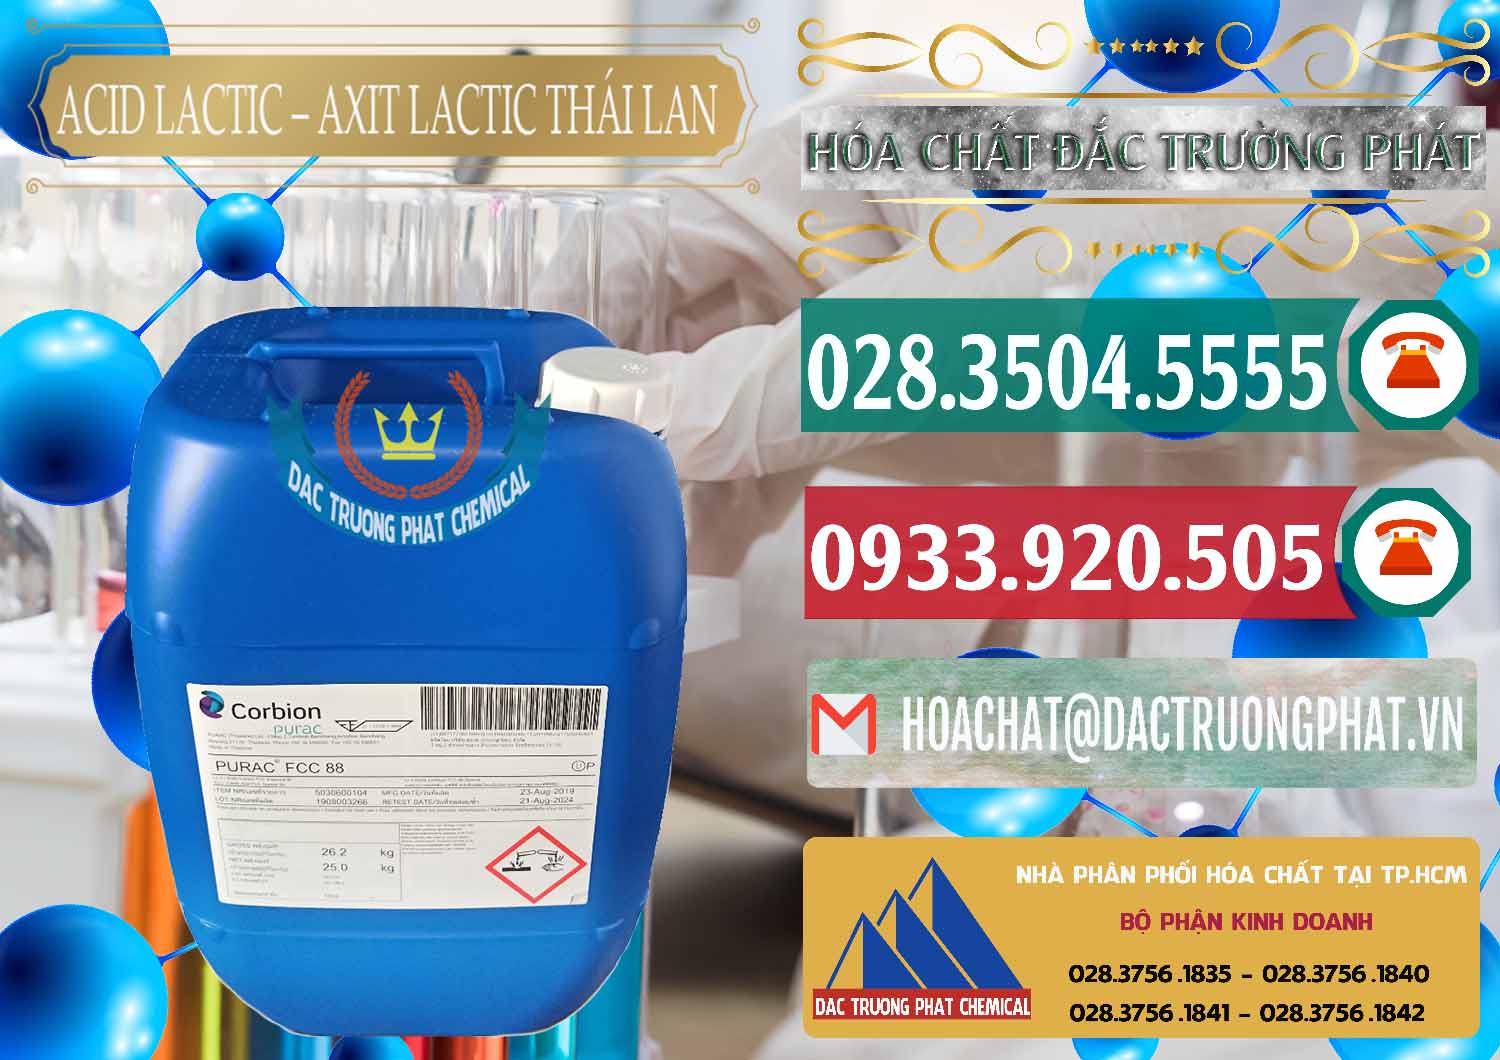 Nơi chuyên kinh doanh và bán Acid Lactic – Axit Lactic Thái Lan Purac FCC 88 - 0012 - Cty chuyên nhập khẩu và phân phối hóa chất tại TP.HCM - muabanhoachat.vn